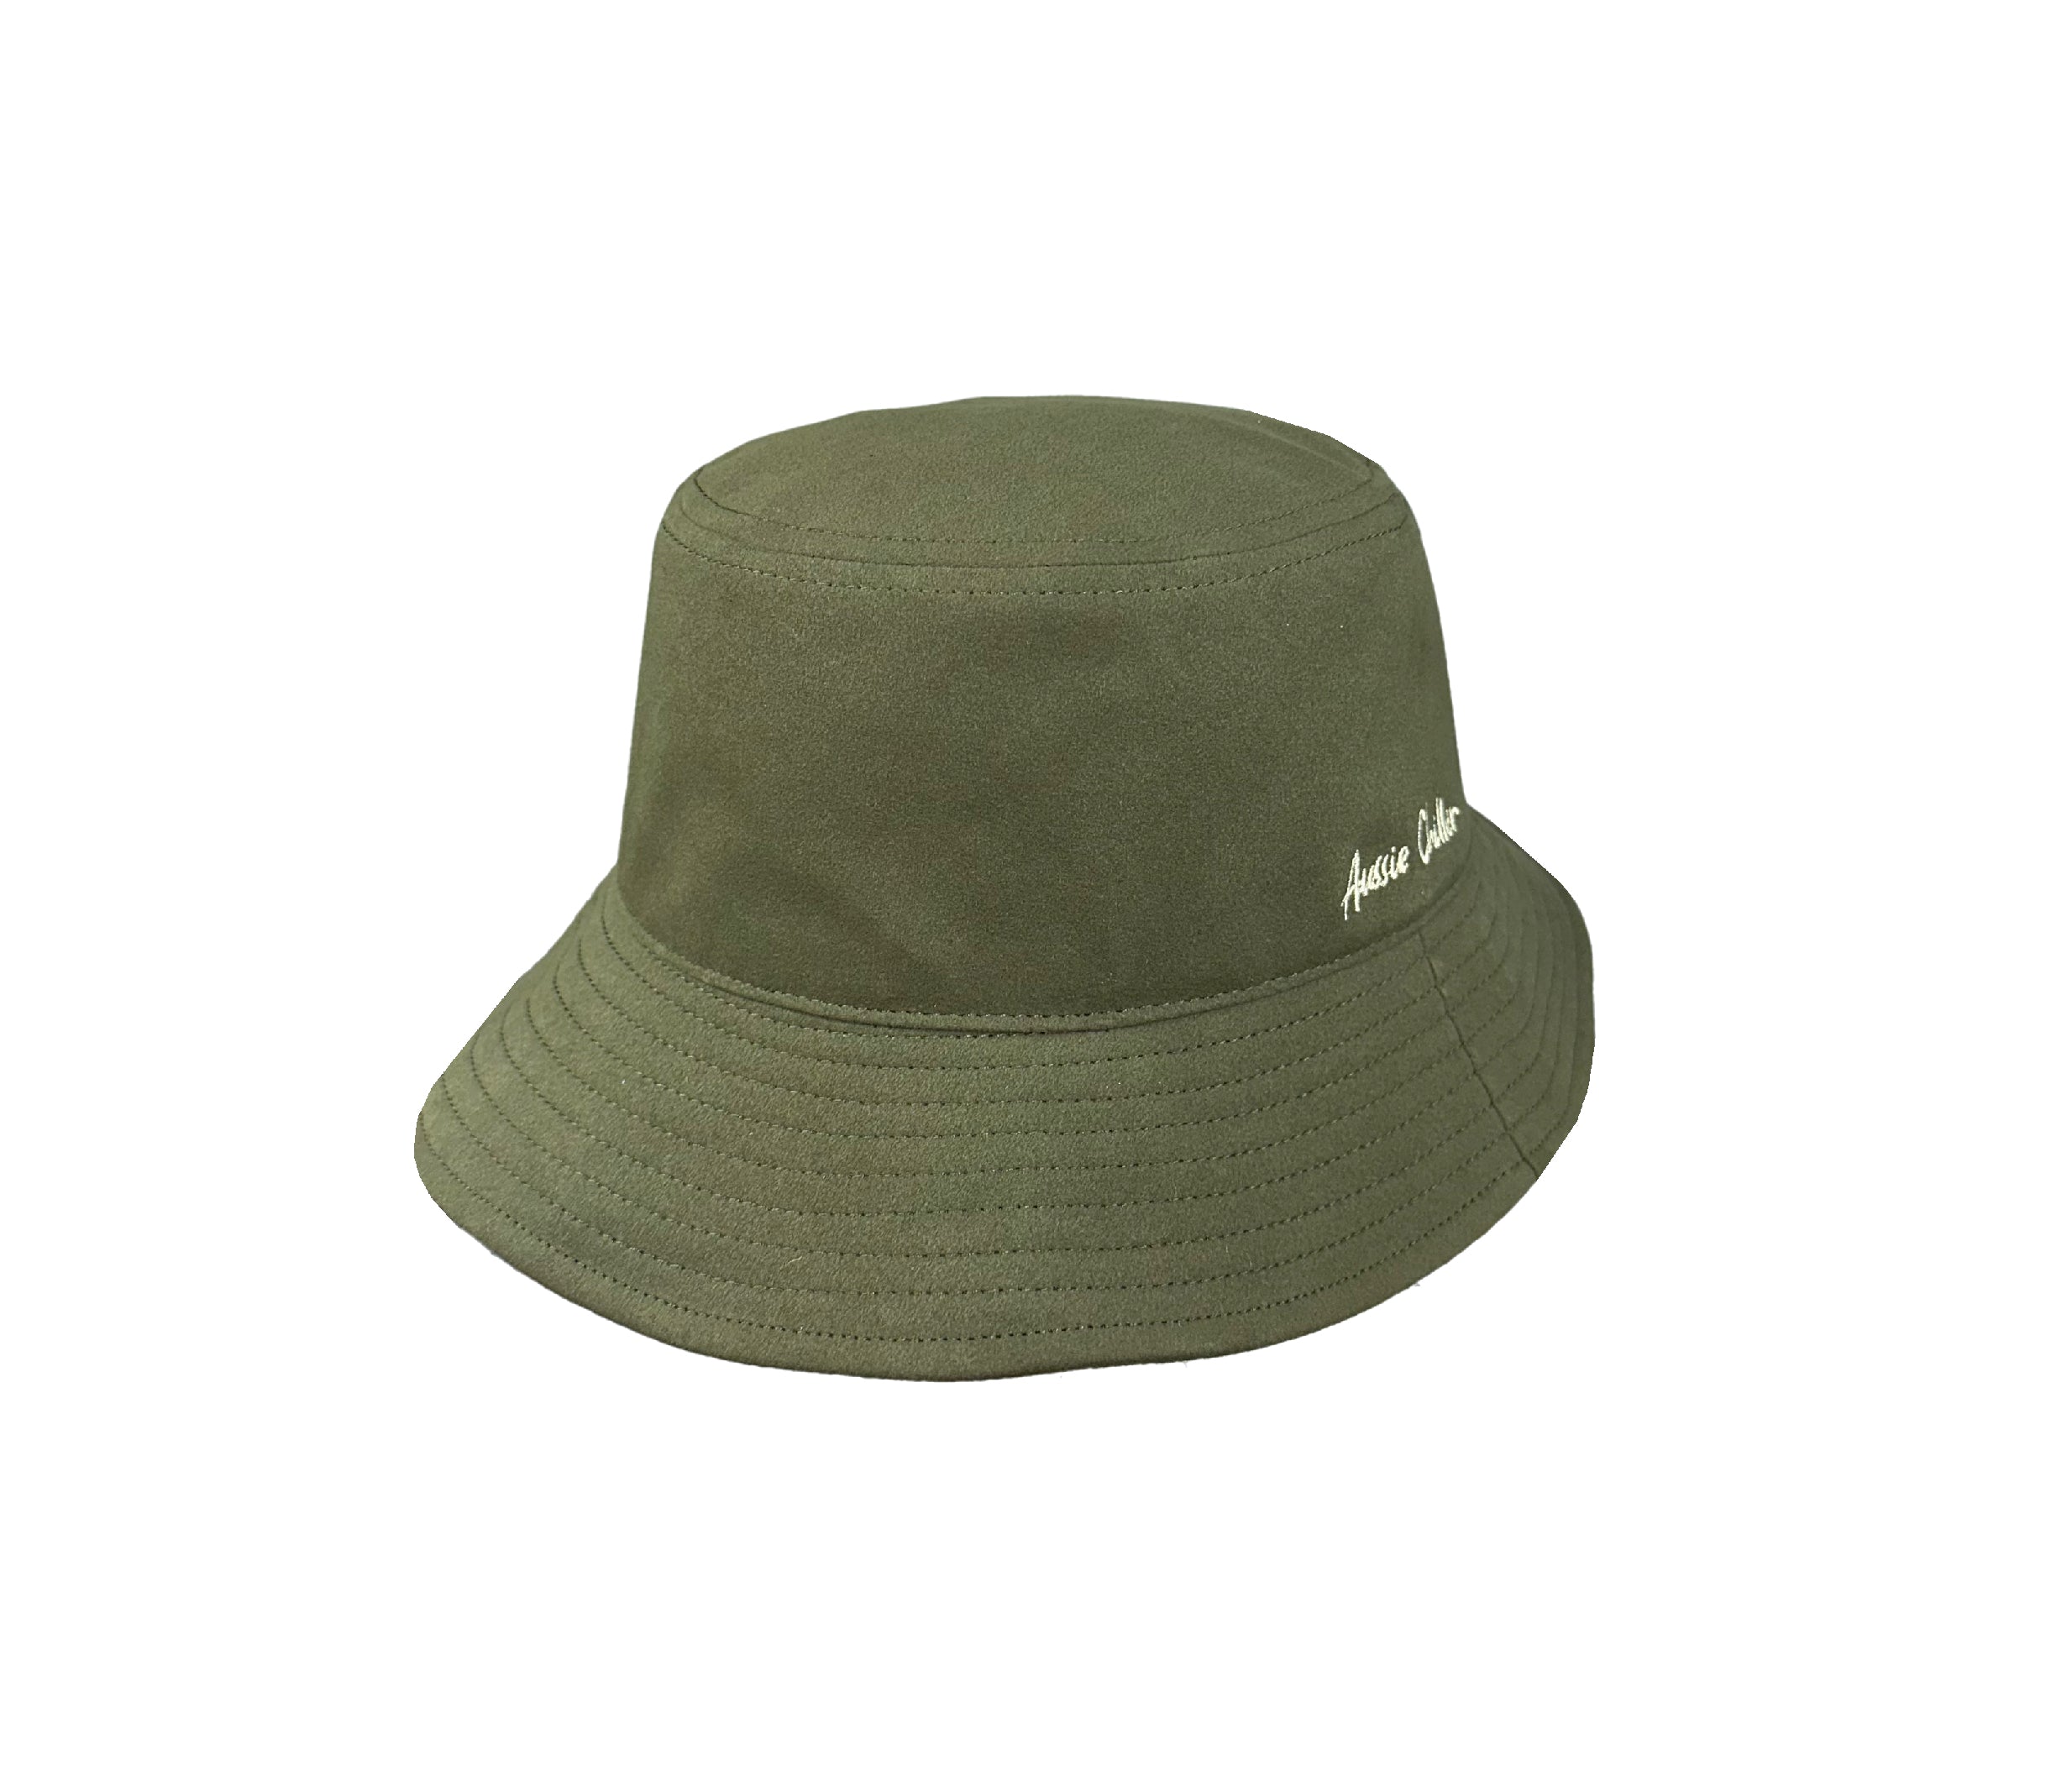 Aussie Chiller Official: Australian Made “Soak Me!” Hats